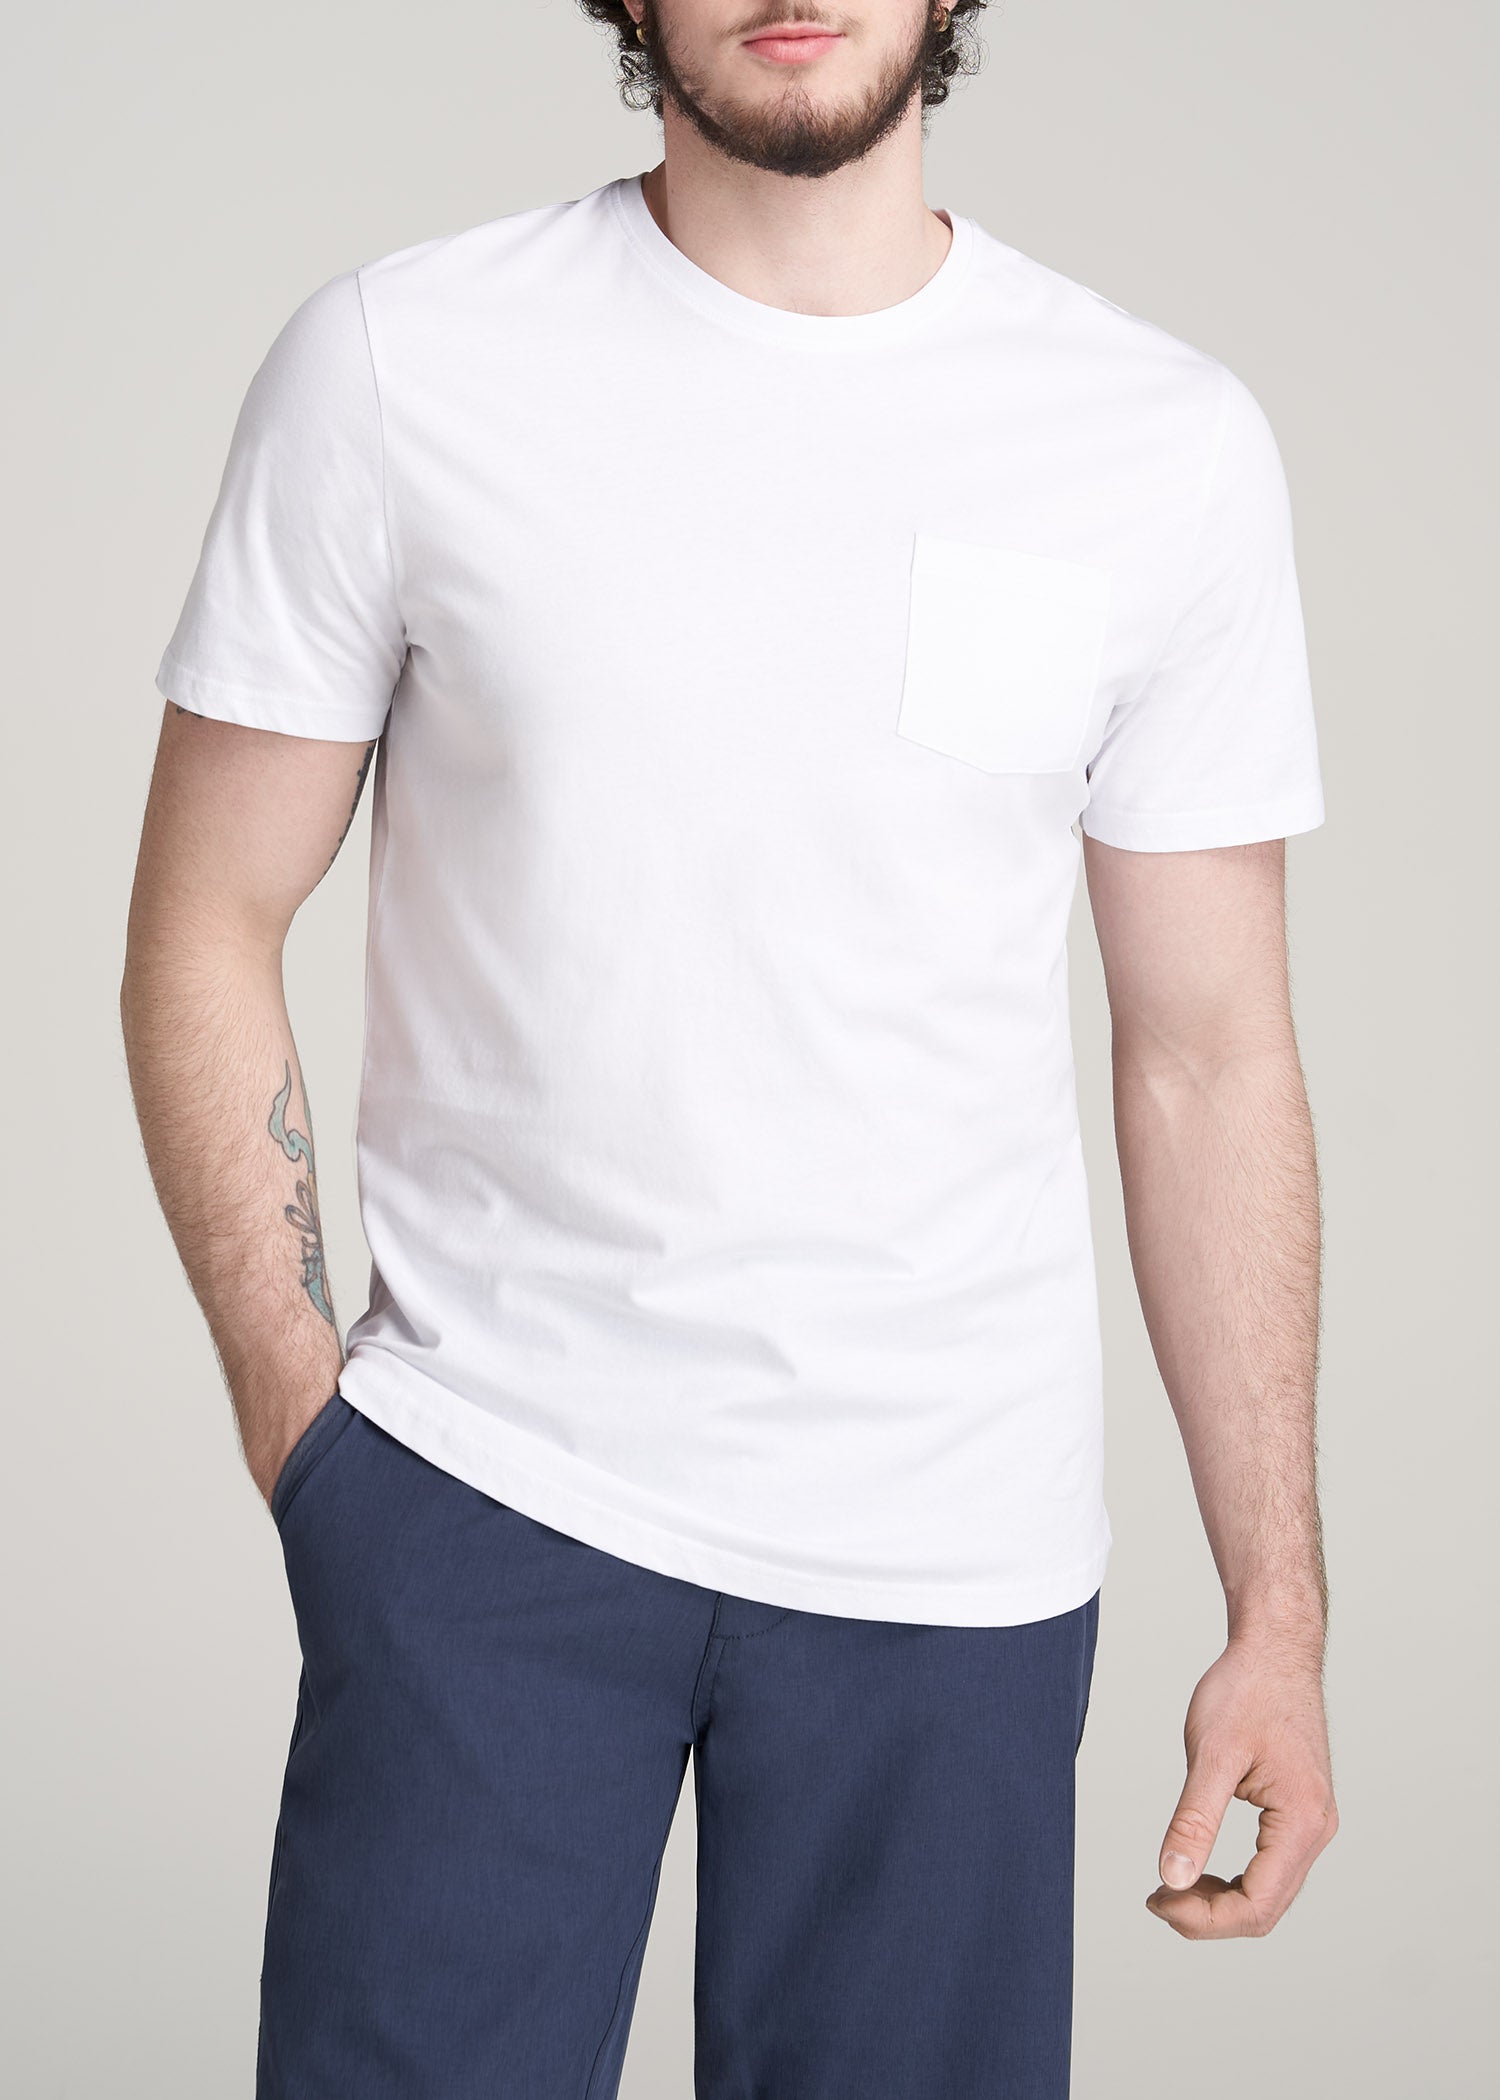 White Pocket T-Shirt For Men